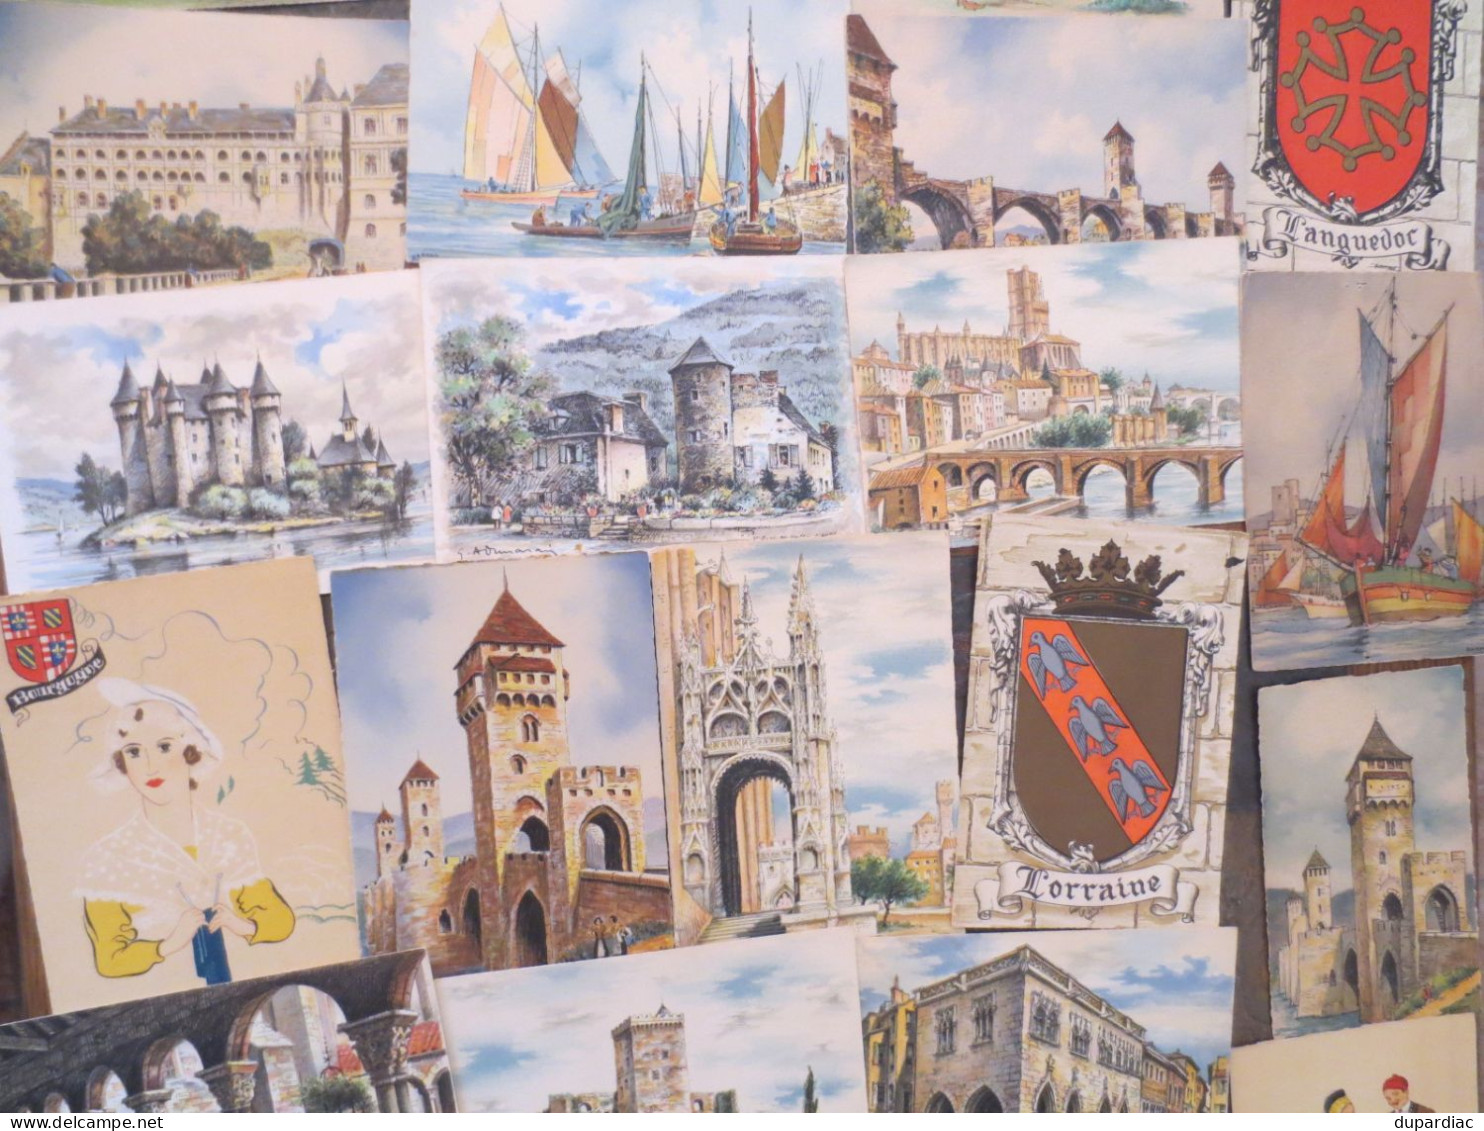 BARDAY - Barré & Dayez, illustrateur et éditeur : LOT de 110 cartes postales.